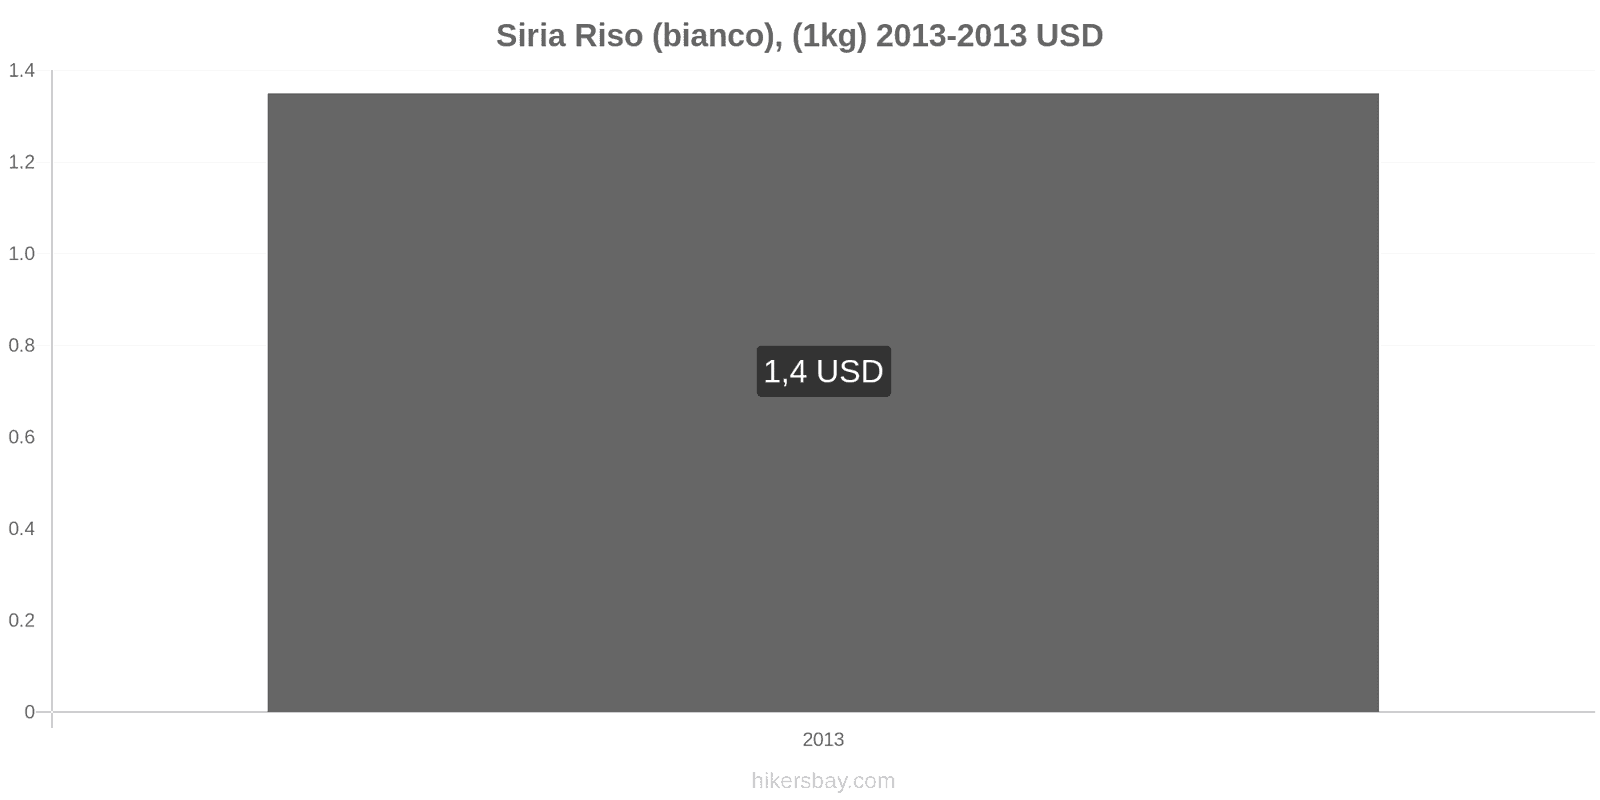 Siria cambi di prezzo Chilo di riso bianco hikersbay.com